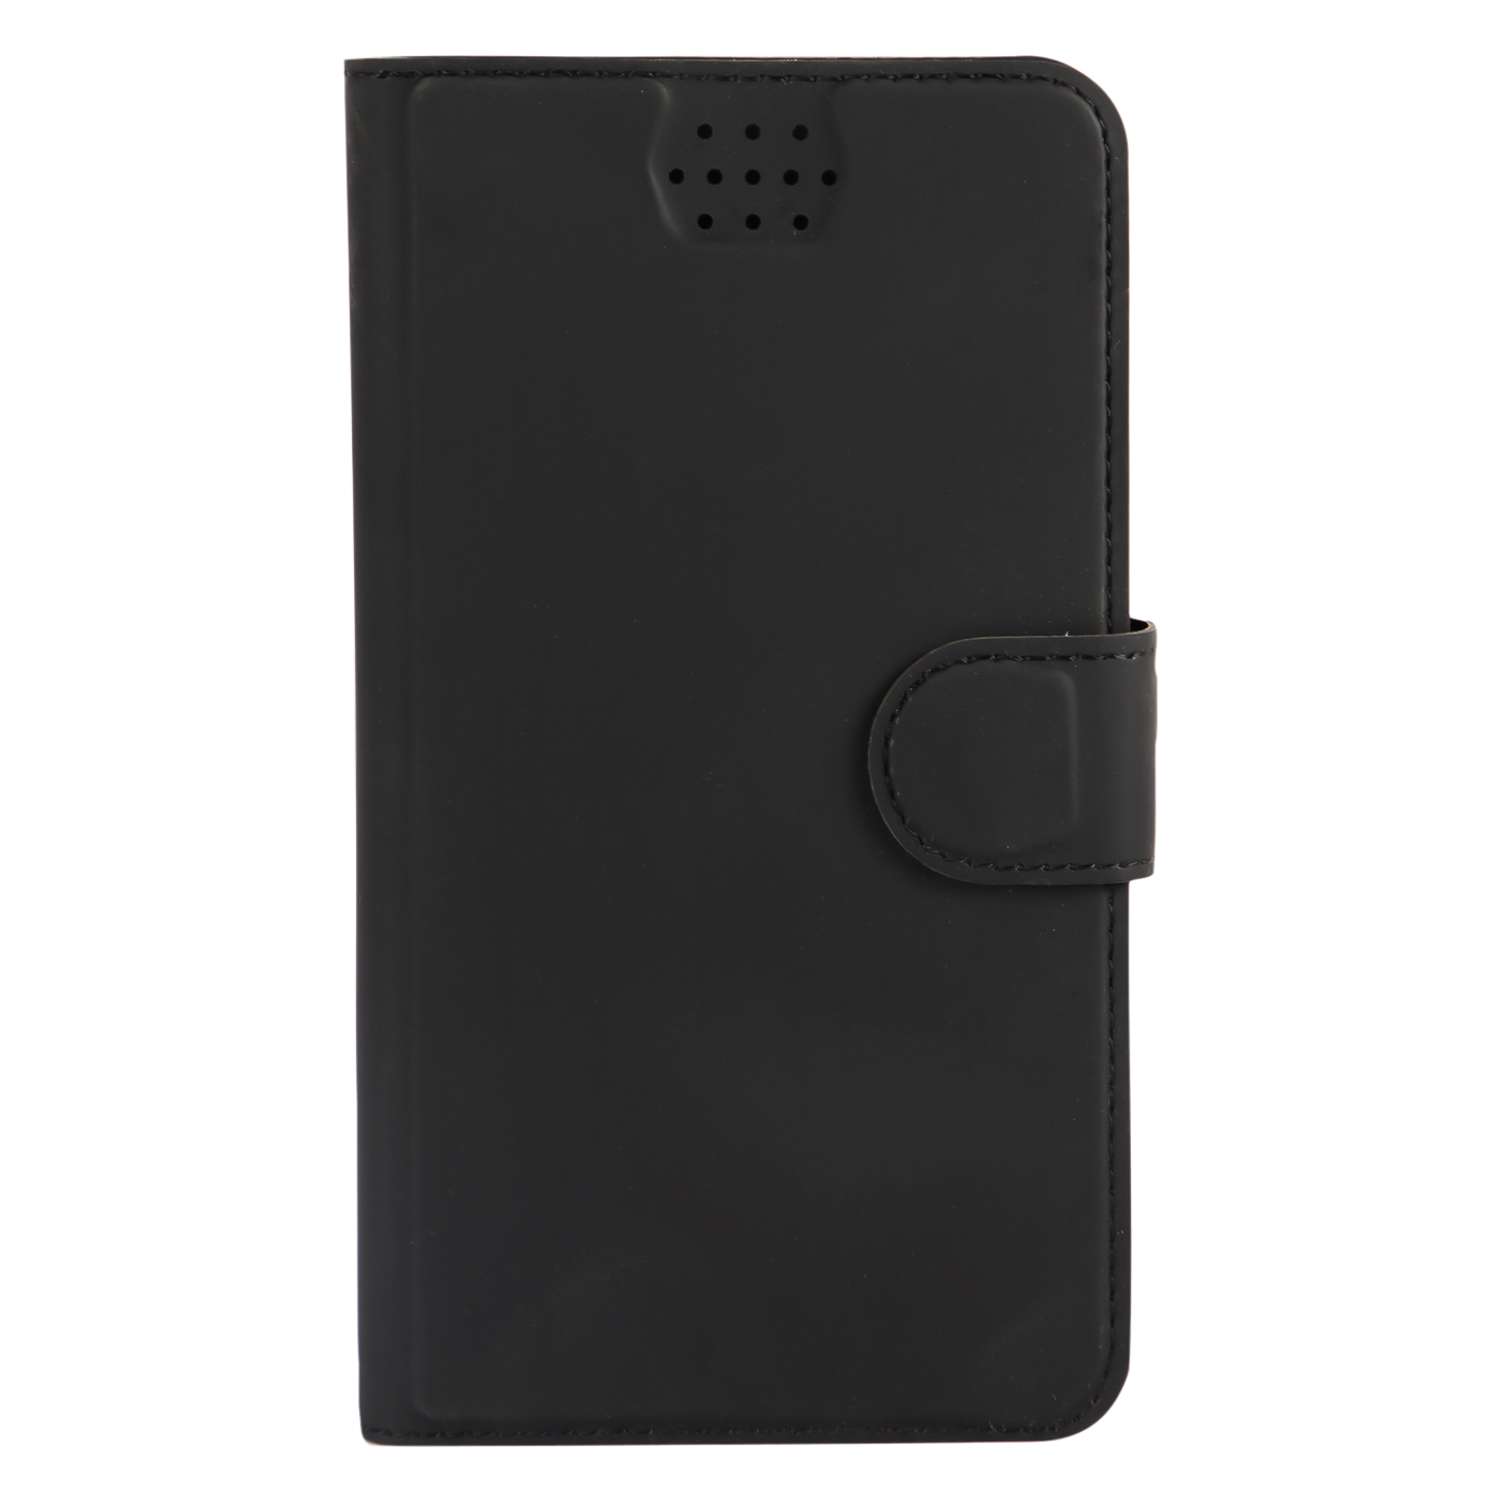 Чехол универсальный iBox UniMotion для телефонов 4.3-5 дюйма черный - фото 3